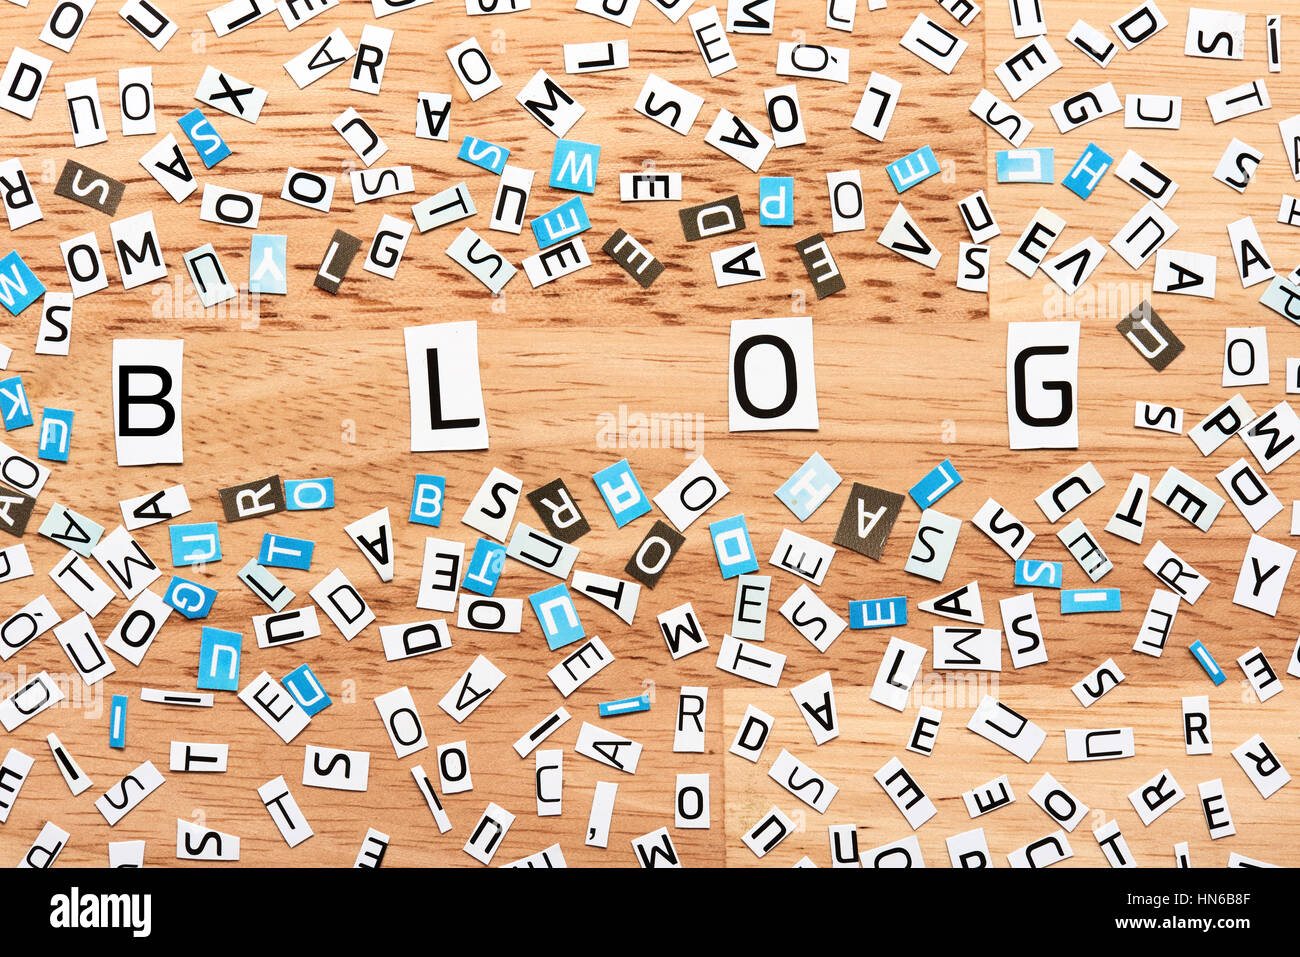 Blog das Wort Ausschneiden von Buchstaben auf Holztisch Stockfoto